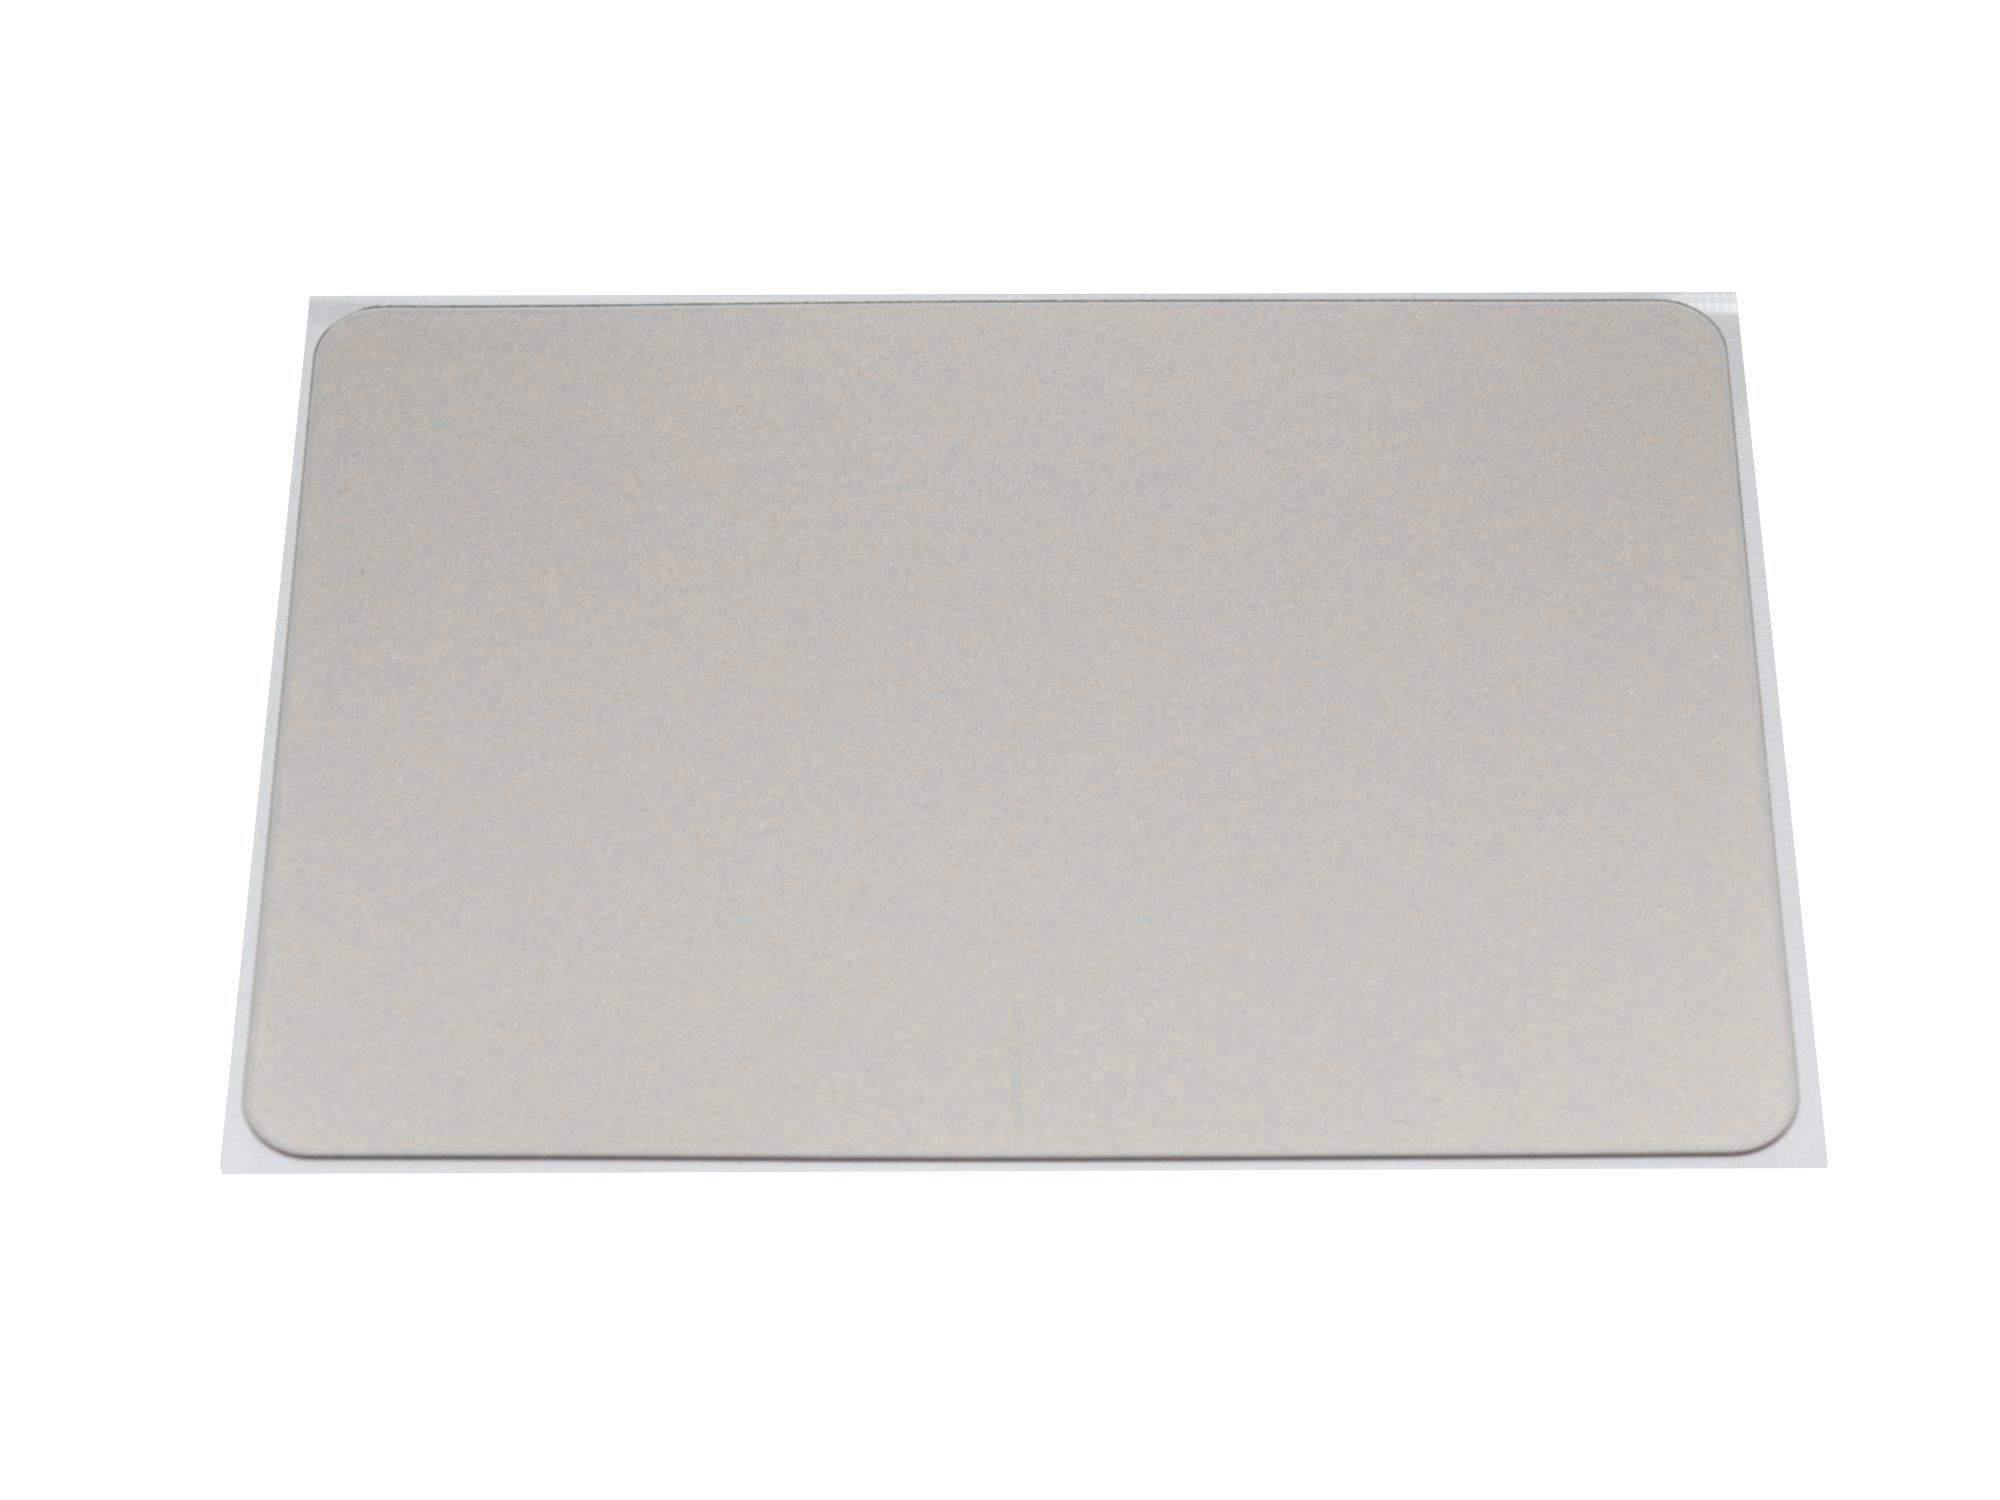 ASUS Touchpad Abdeckung silber für Asus F556UJ Serie